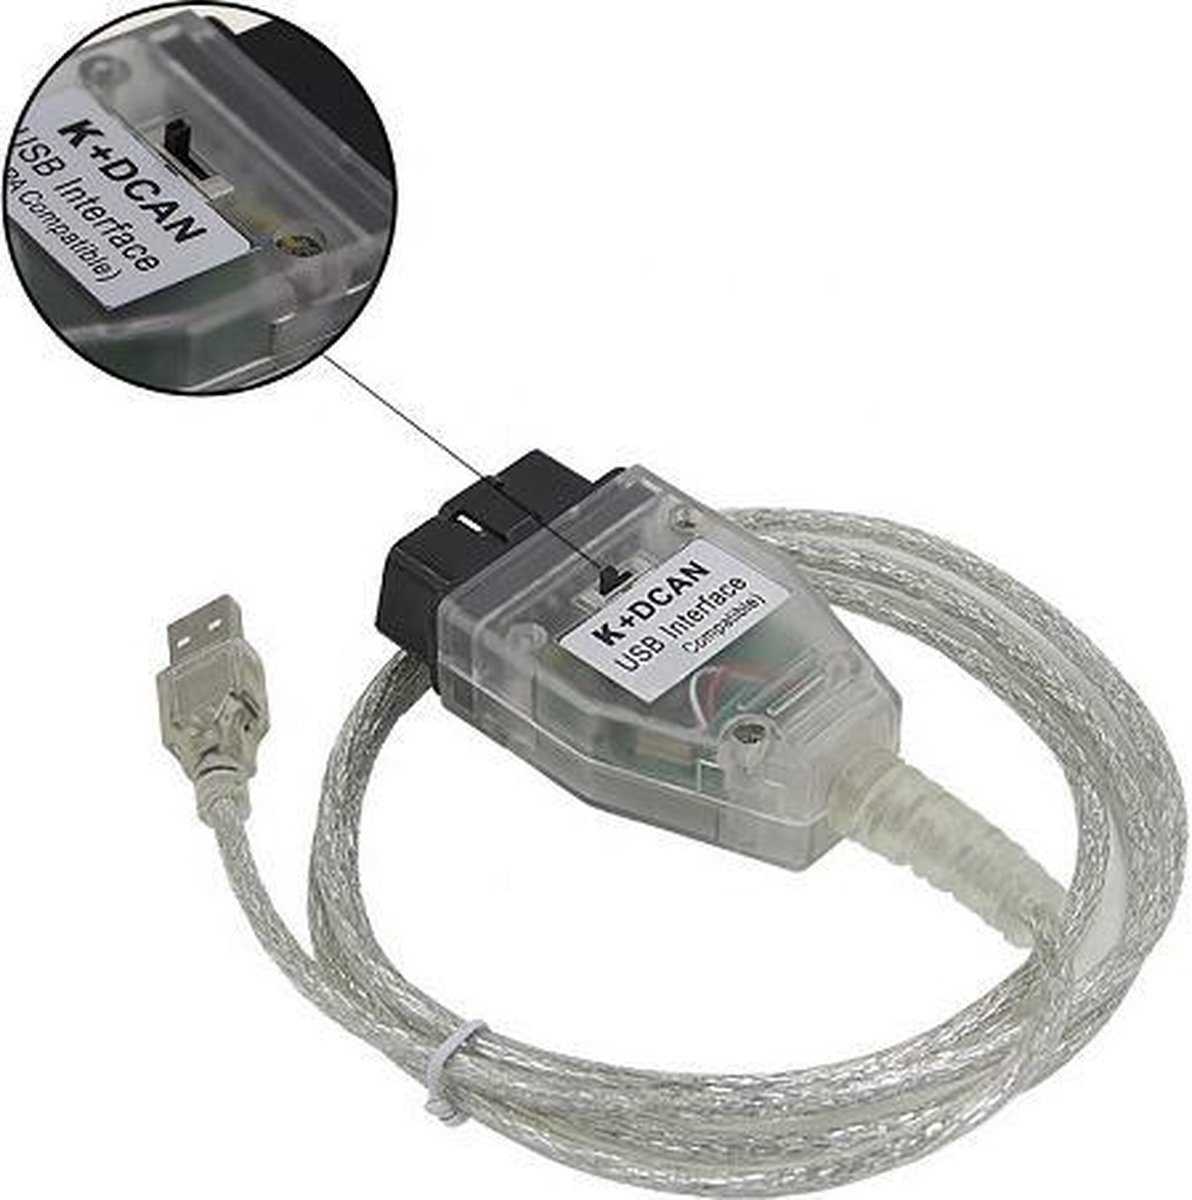 Interface K + DCAN USB OBD2 pour BMW avec interrupteur câble kdcan logiciel  inpa bmw